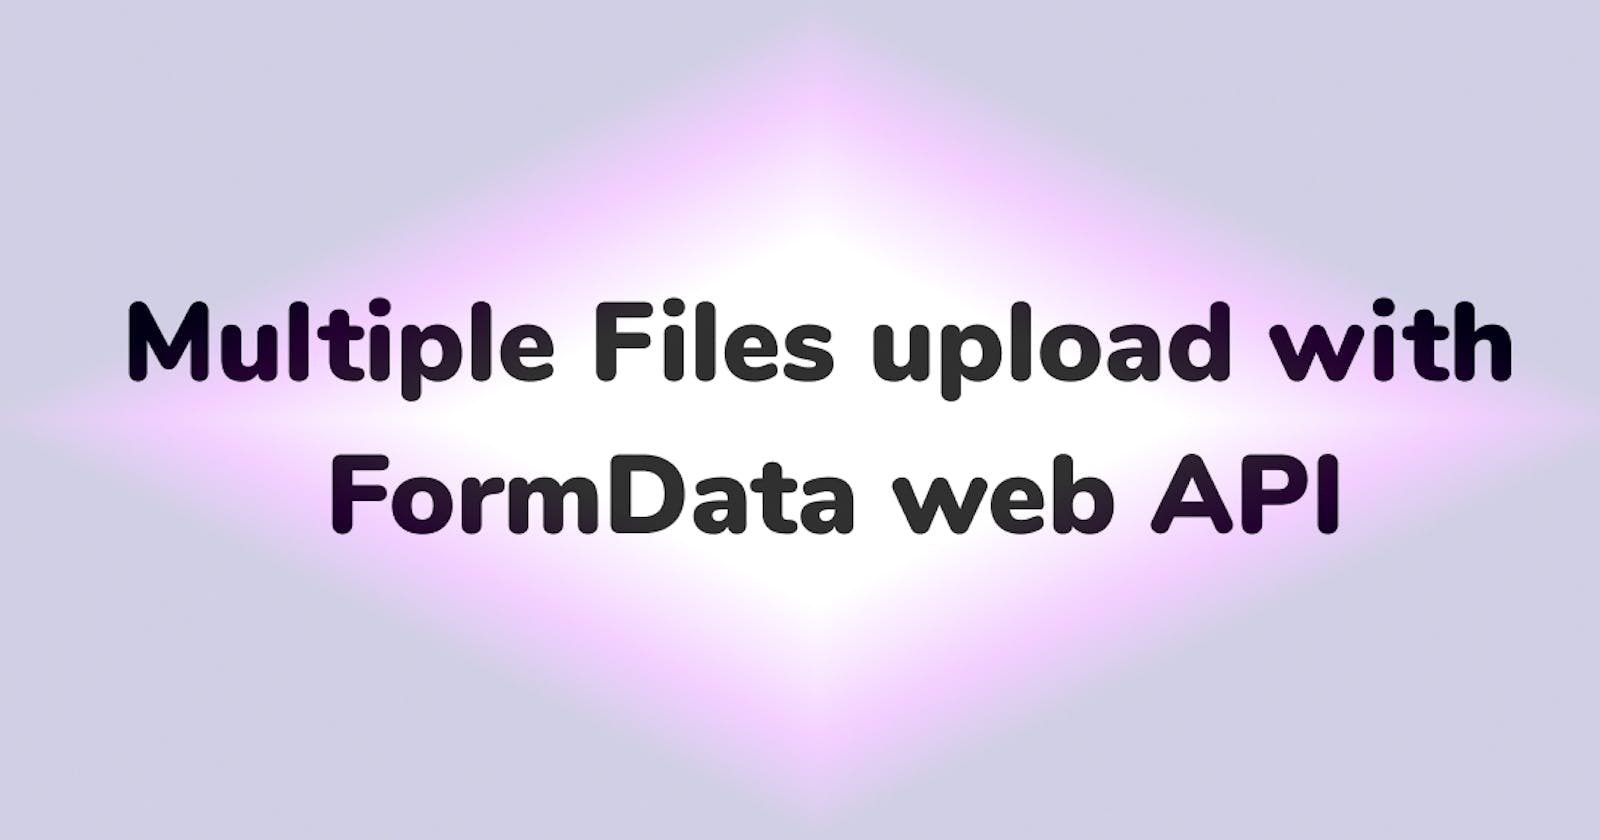 Upload multiple images using FormData Web API